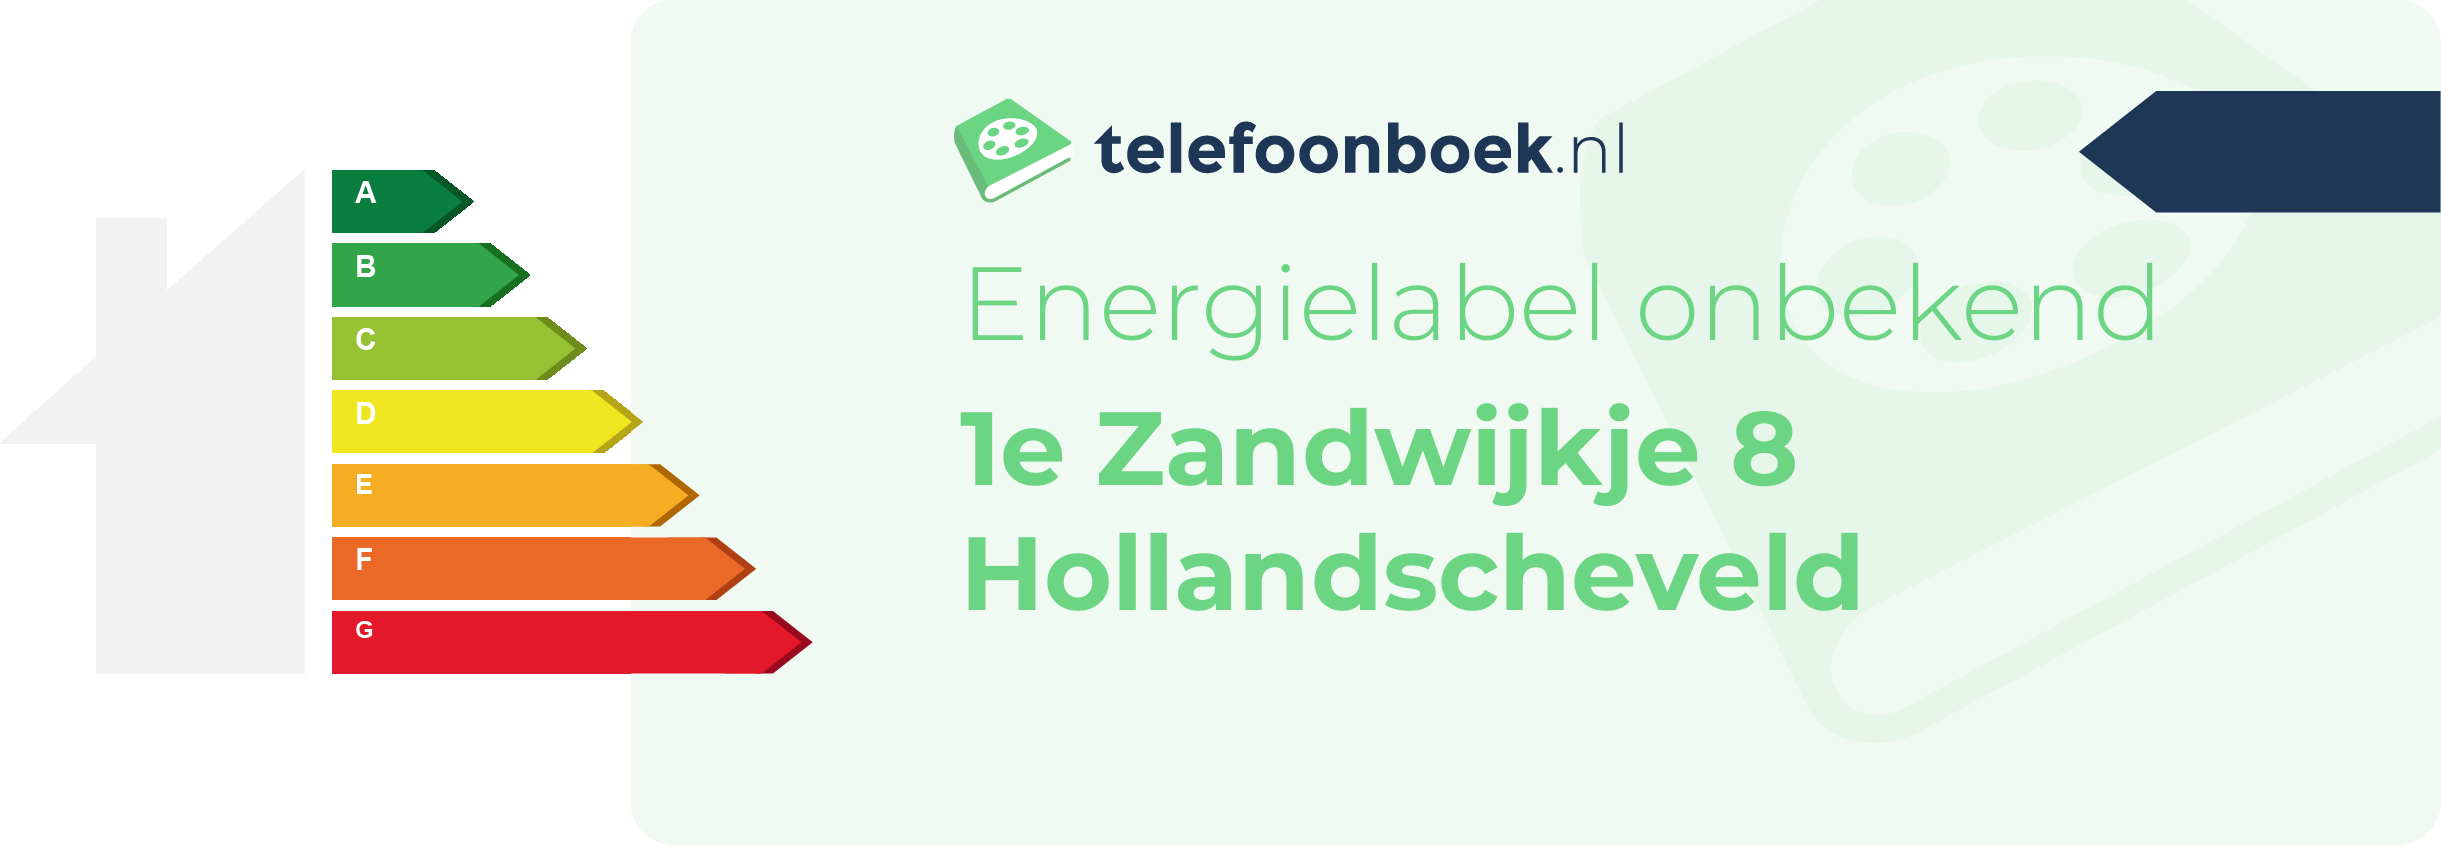 Energielabel 1e Zandwijkje 8 Hollandscheveld